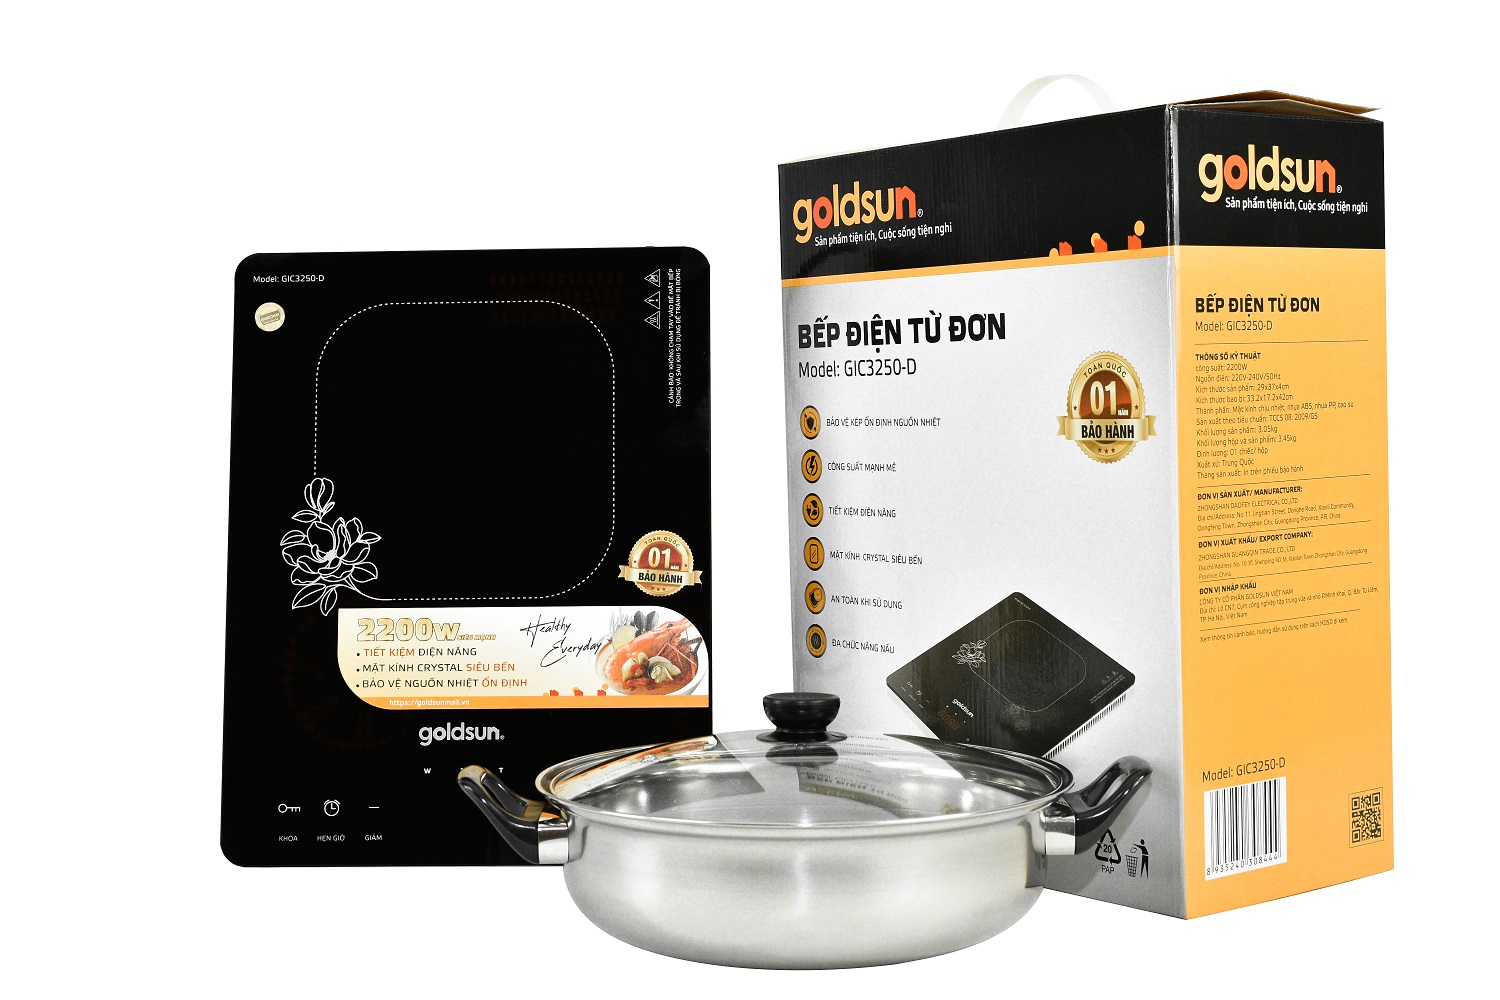 Bếp điện từ đơn Goldsun GIC3250-D